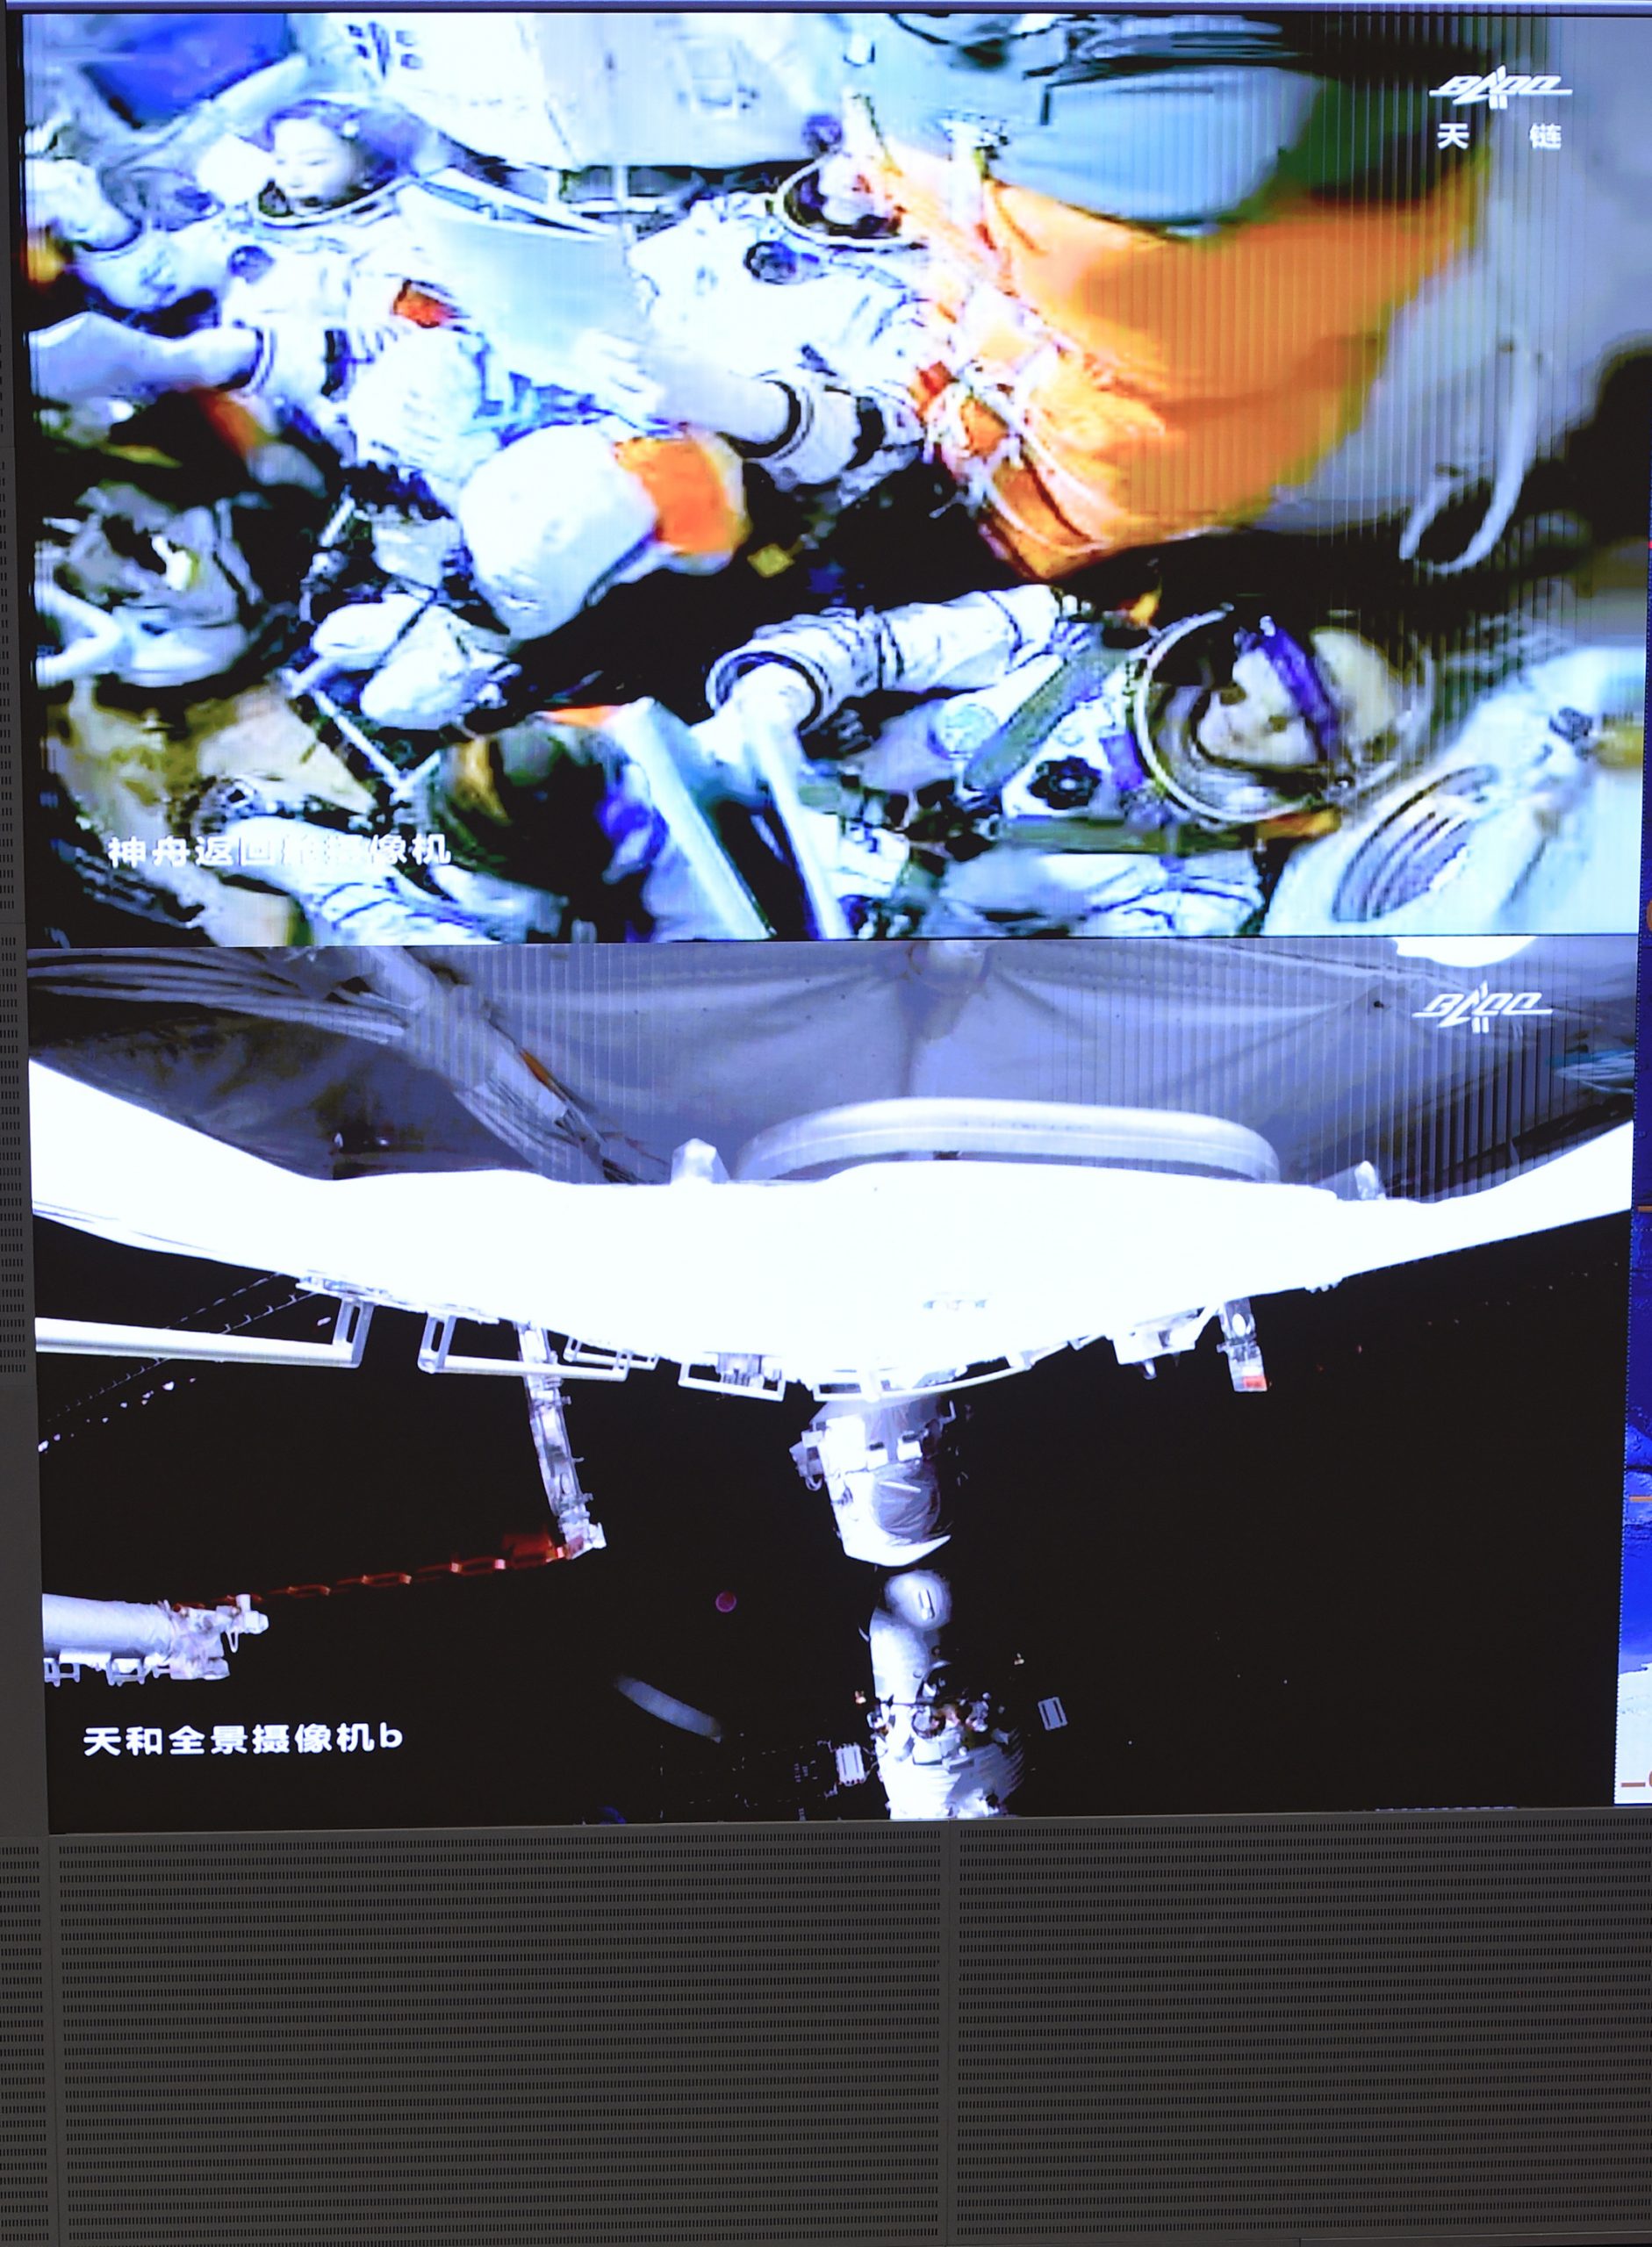 神舟十三号成功对接 3名太空人将进驻天和核心舱